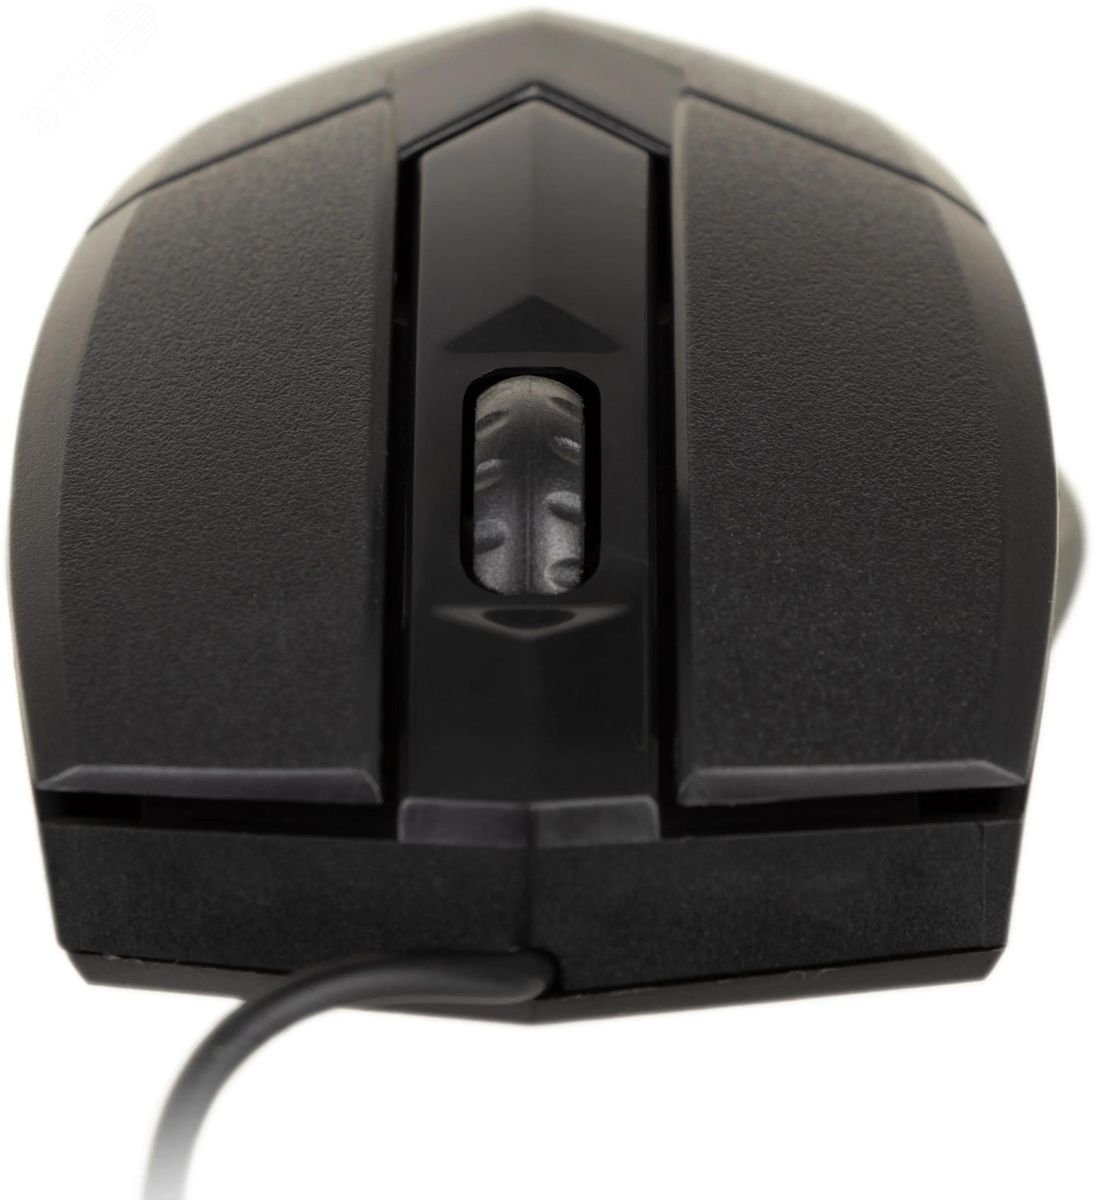 Мышь Optimum MB-270 оптическая, 3 кнопки, 1000 dpi, черный 52270 Defender - превью 3